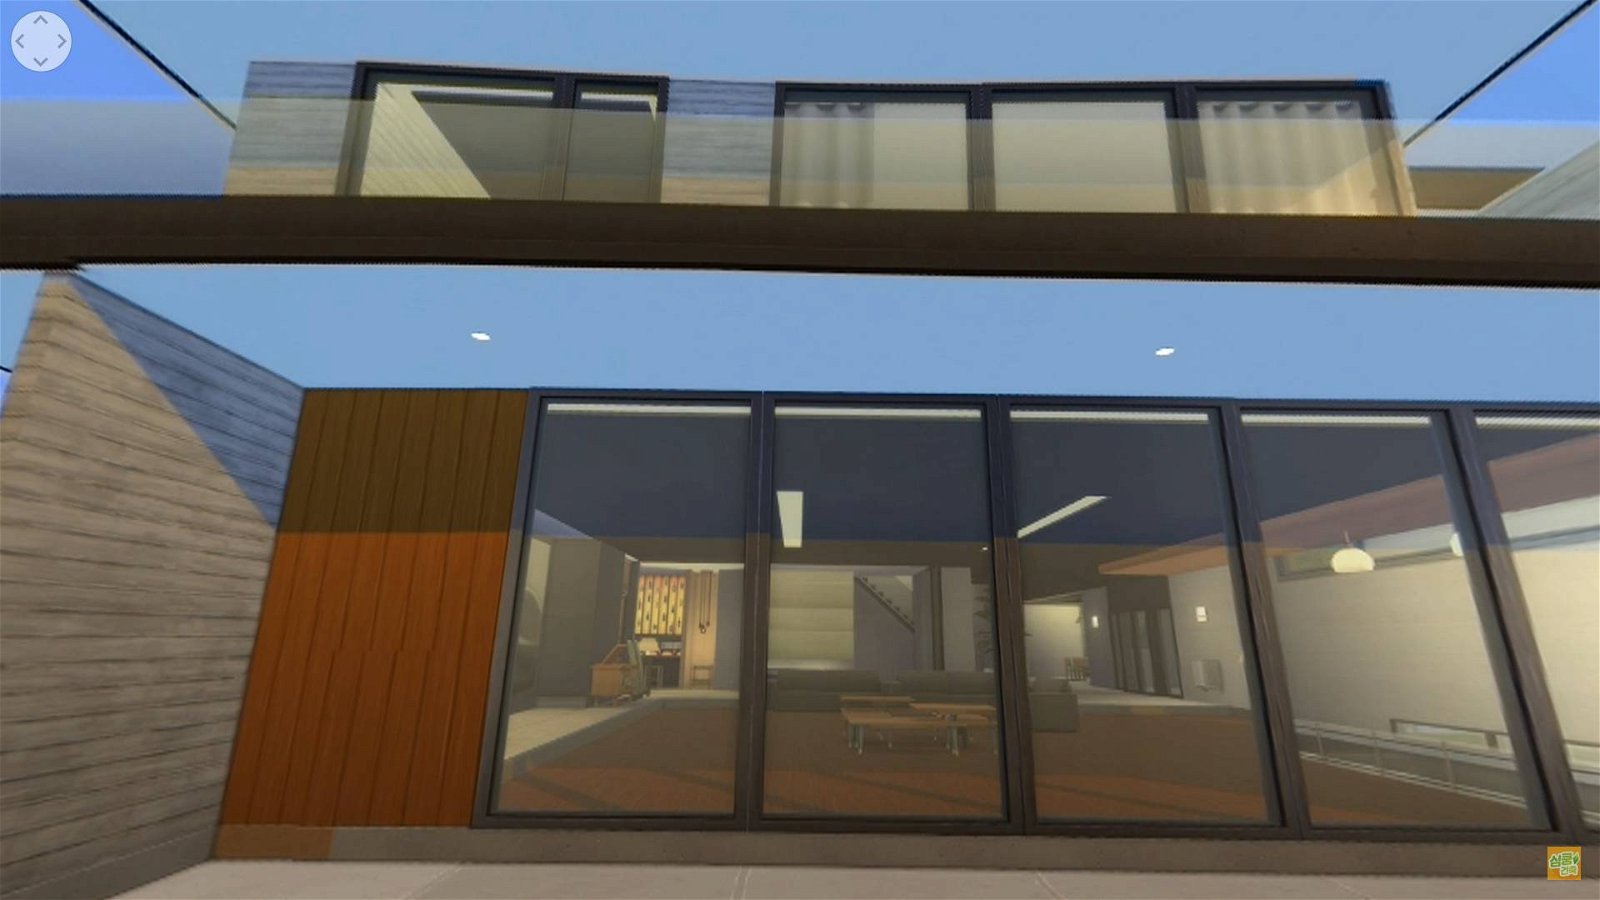 Immagine di The Sims 4, un architetto riproduce nel gioco la casa del film Parasite